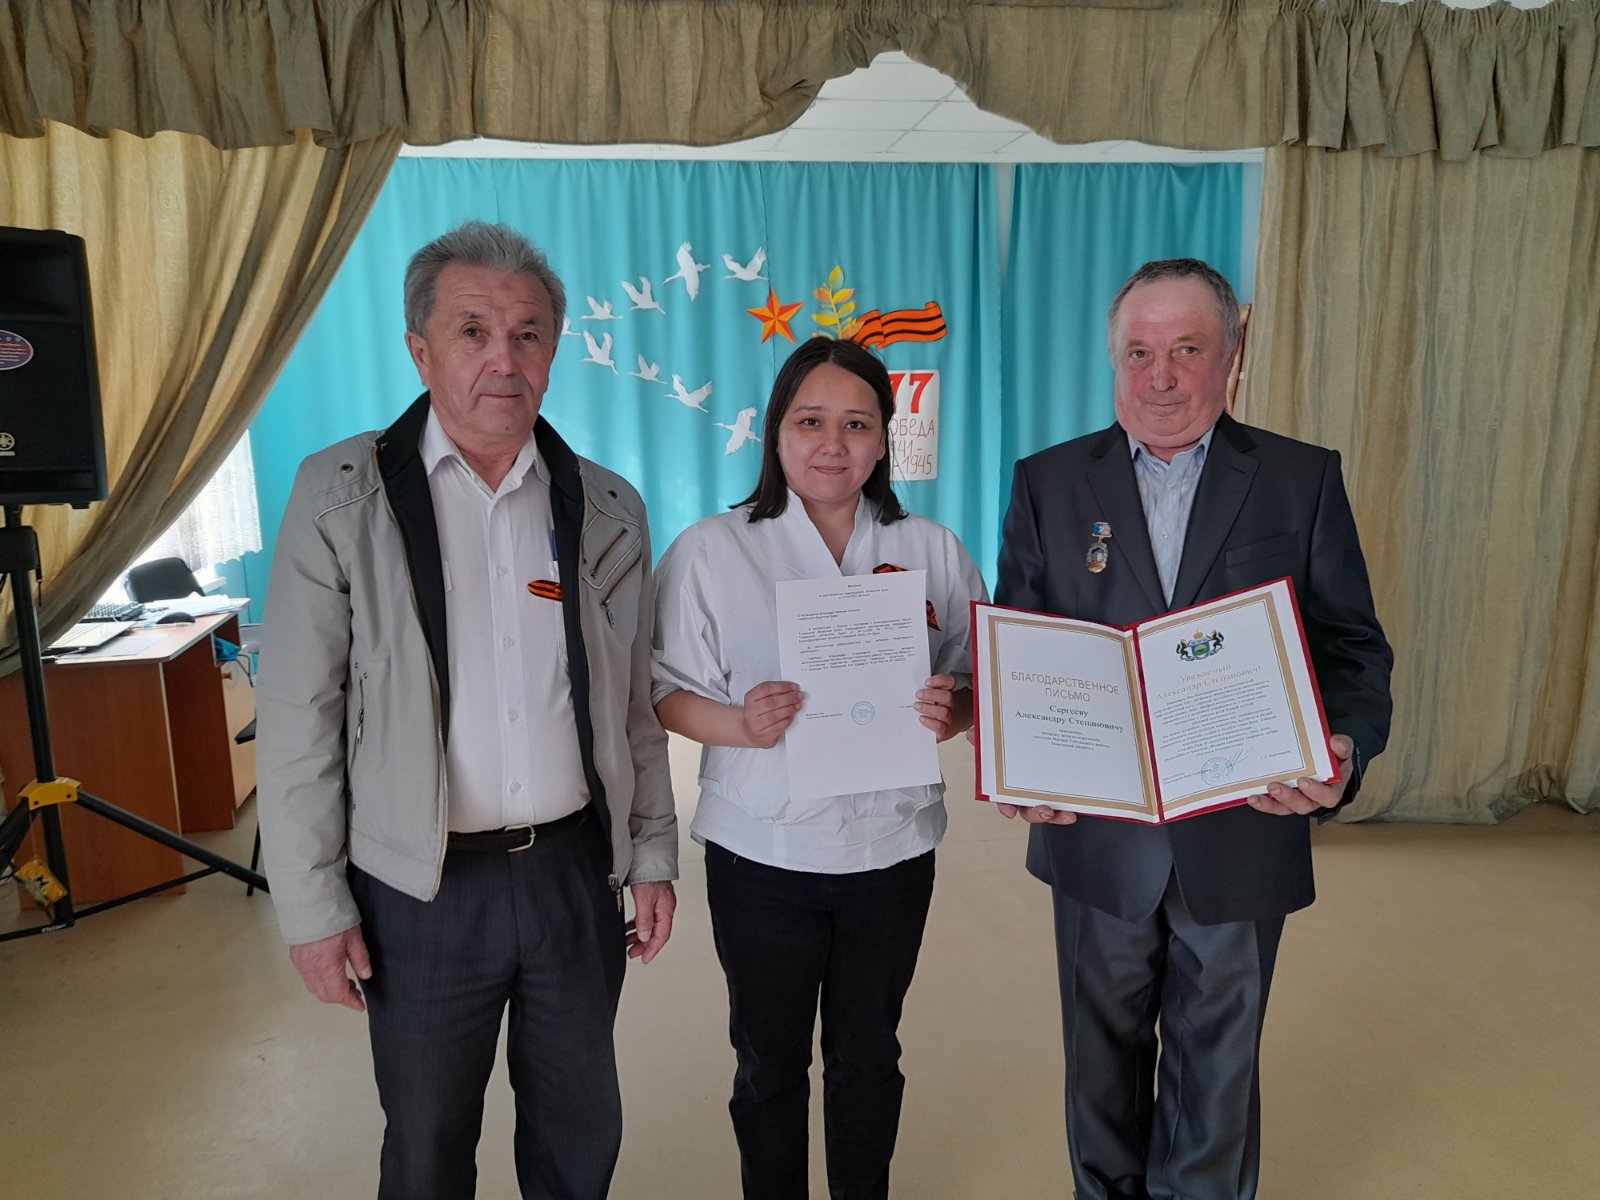                                                 Регина Юхневич провела приём граждан в с. Малая Зоркальцева и вручила заслуженную награду жителю п. Ингаир Тобольского района                                        